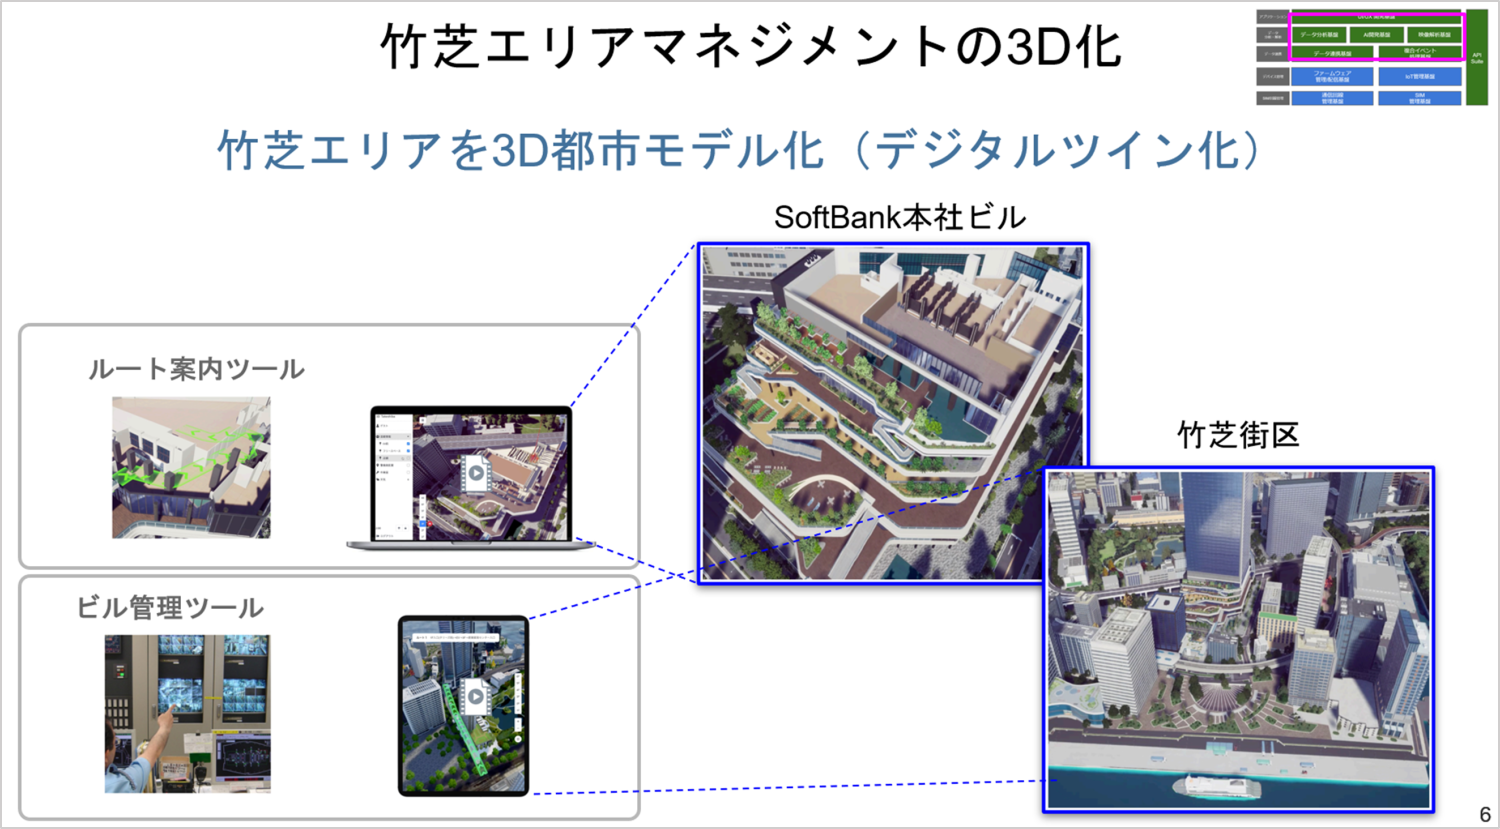 竹芝エリアマネジメントの3D化の図。SoftBank本社ビルはルート案内ツールで操作、竹芝街区はビル管理ツールで閲覧できるイメージ